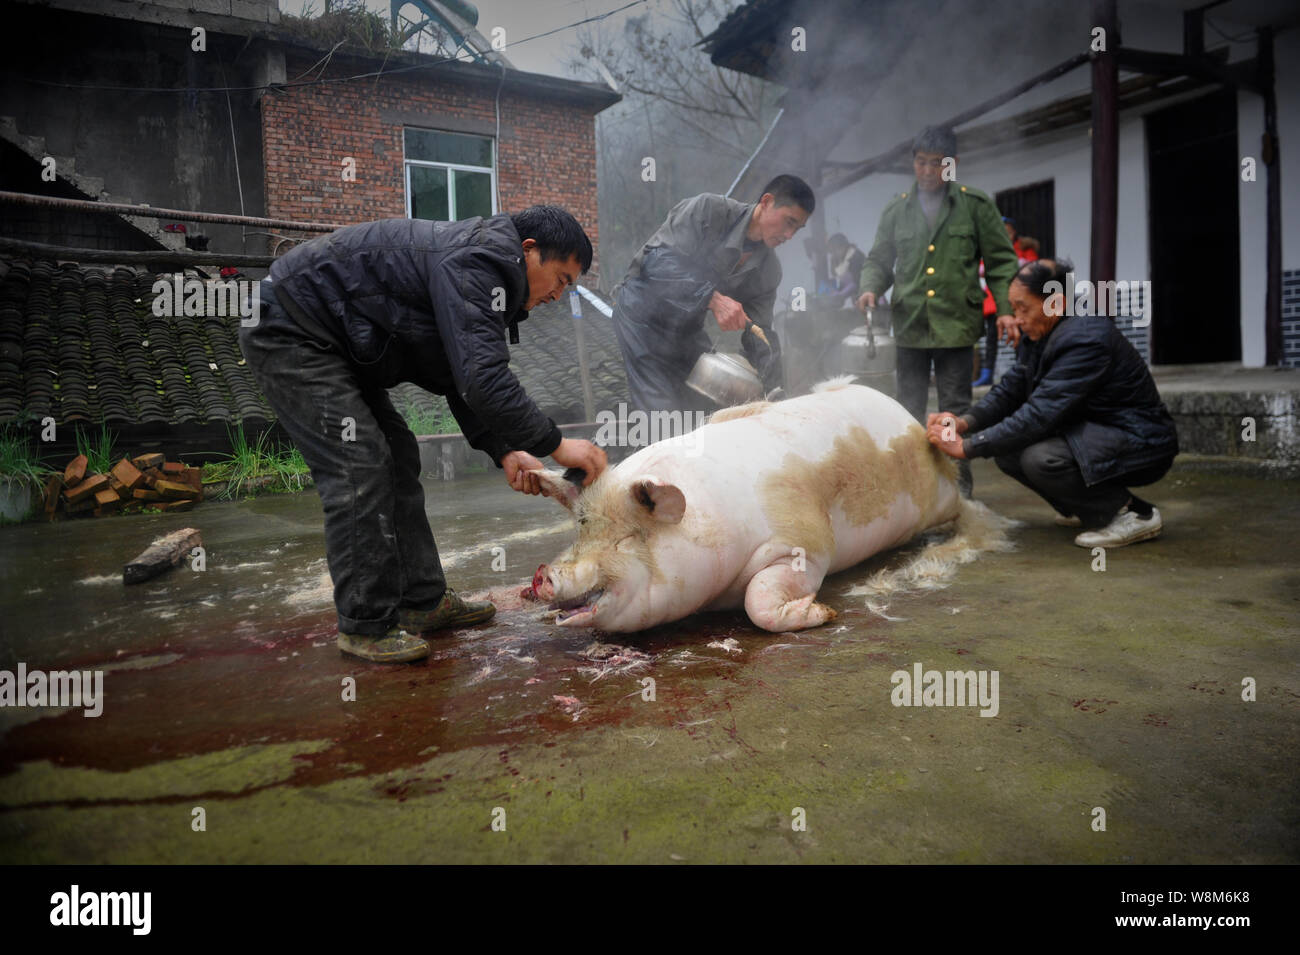 Carniceros chinos depile un cerdo en la casa de un aldeano en preparación para el próximo Año Nuevo Lunar chino, también conocido como el Festival de Primavera, en Wulo Foto de stock